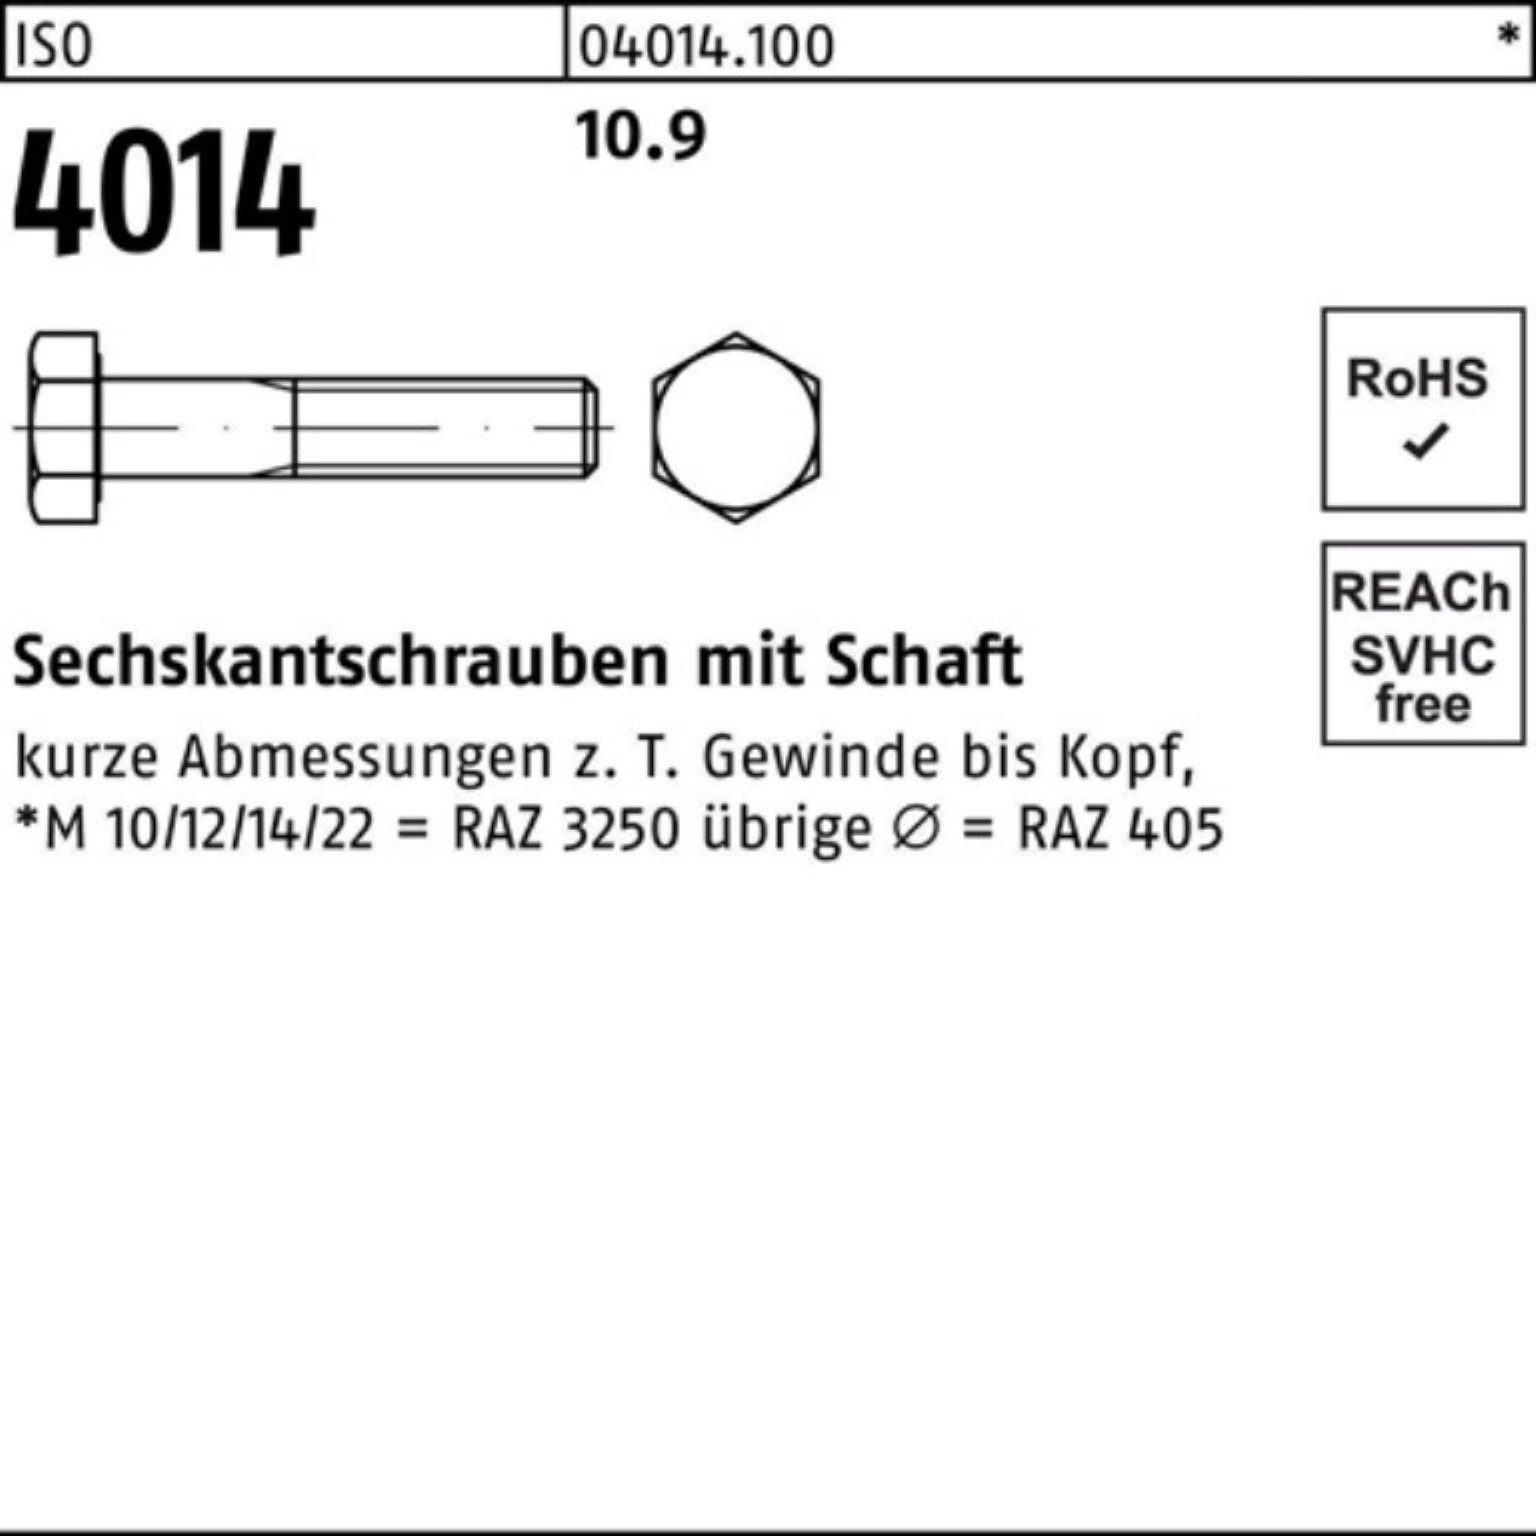 Bufab Sechskantschraube 100er M27x Sechskantschraube 4014 Schaft ISO Stück 10.9 1 Pack IS 180